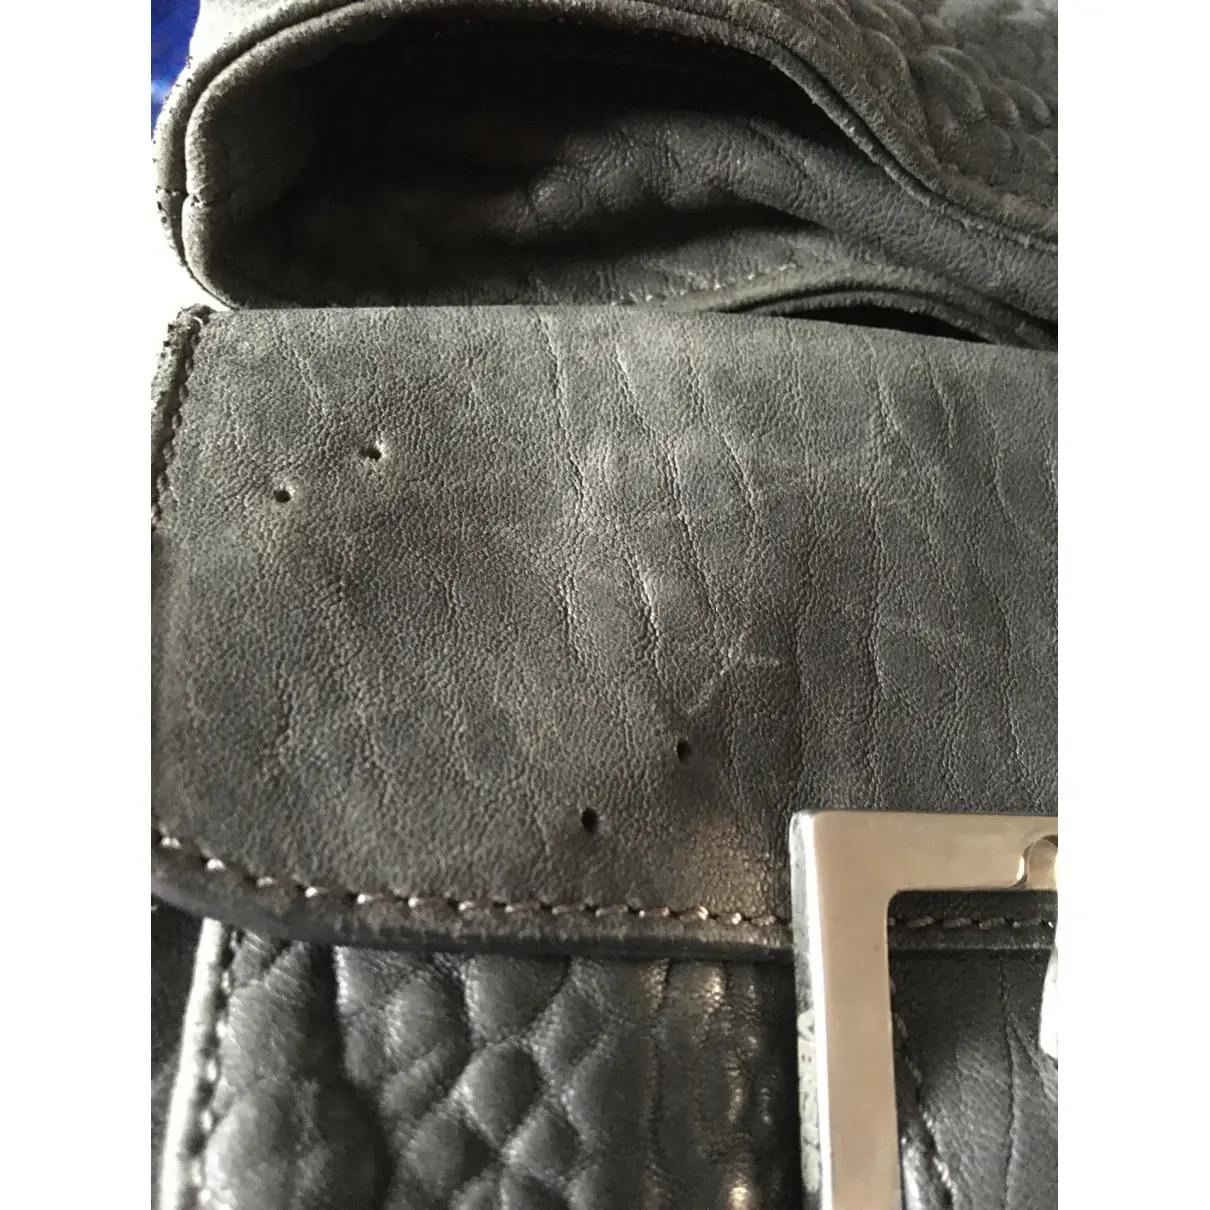 Buy Versus Leather satchel online